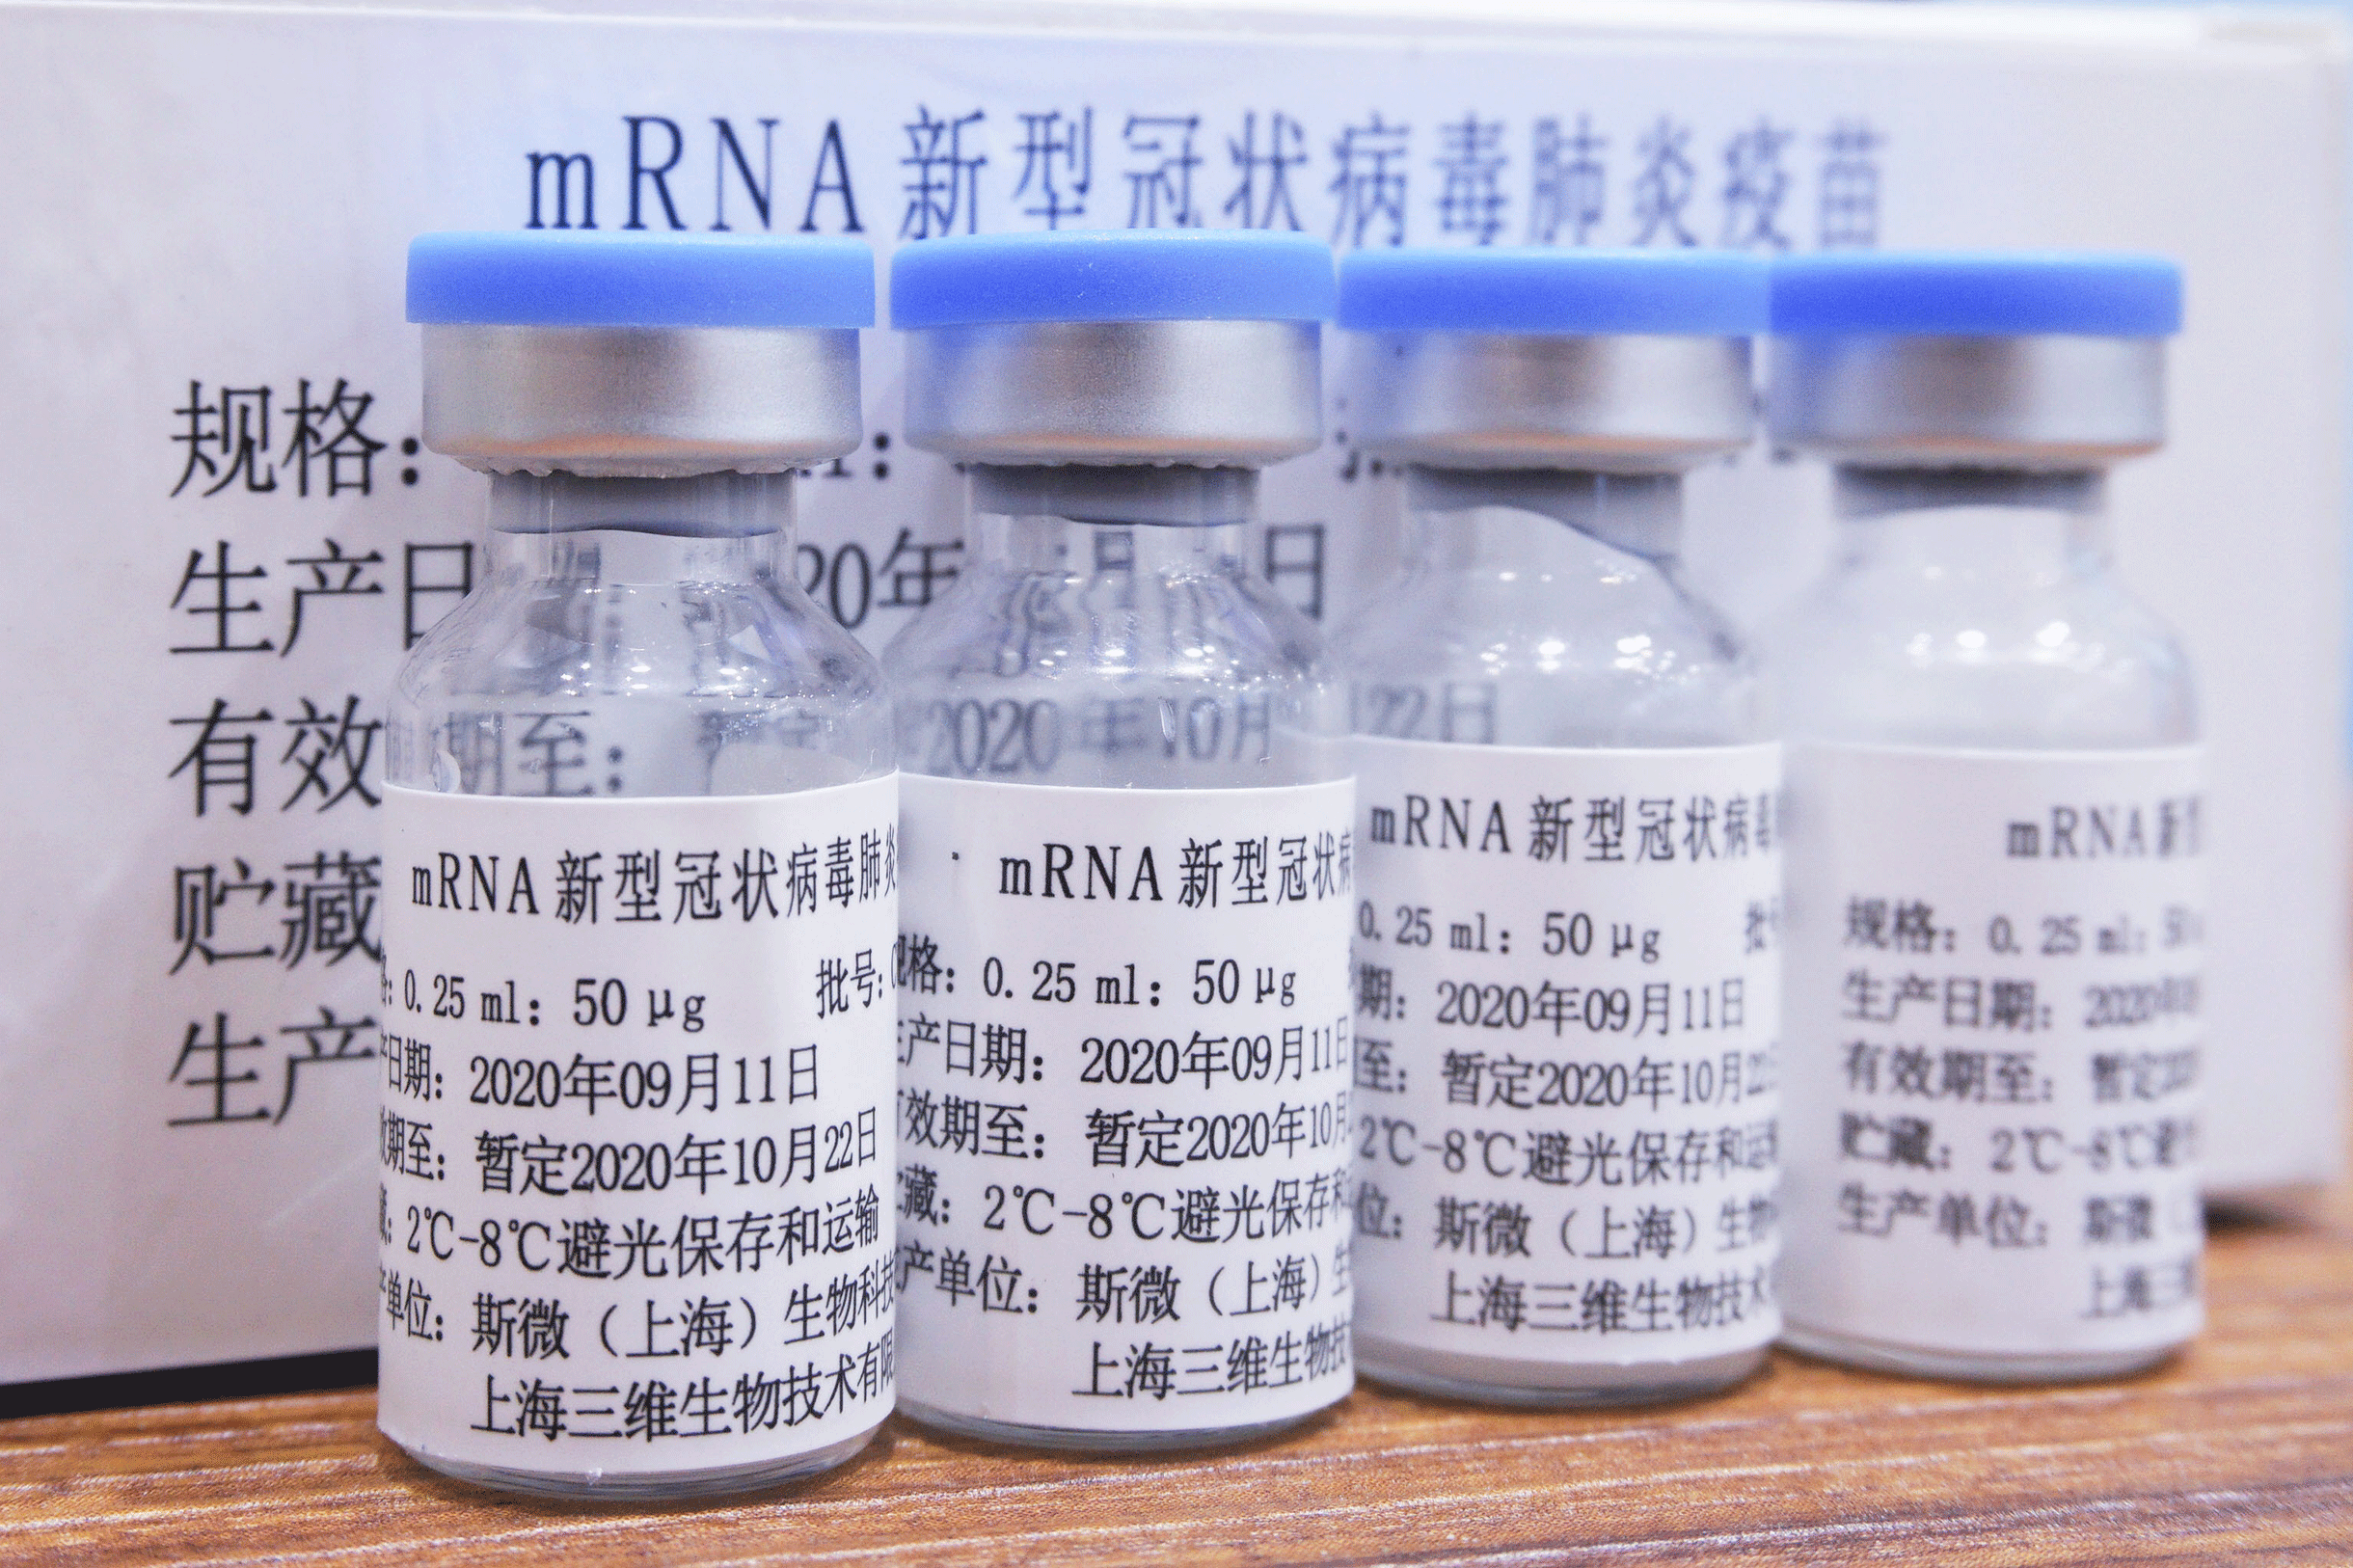 中国のステミルナ・セラピテクスは原材料の大部分を中国内で調達し、mRNAワクチンを開発している